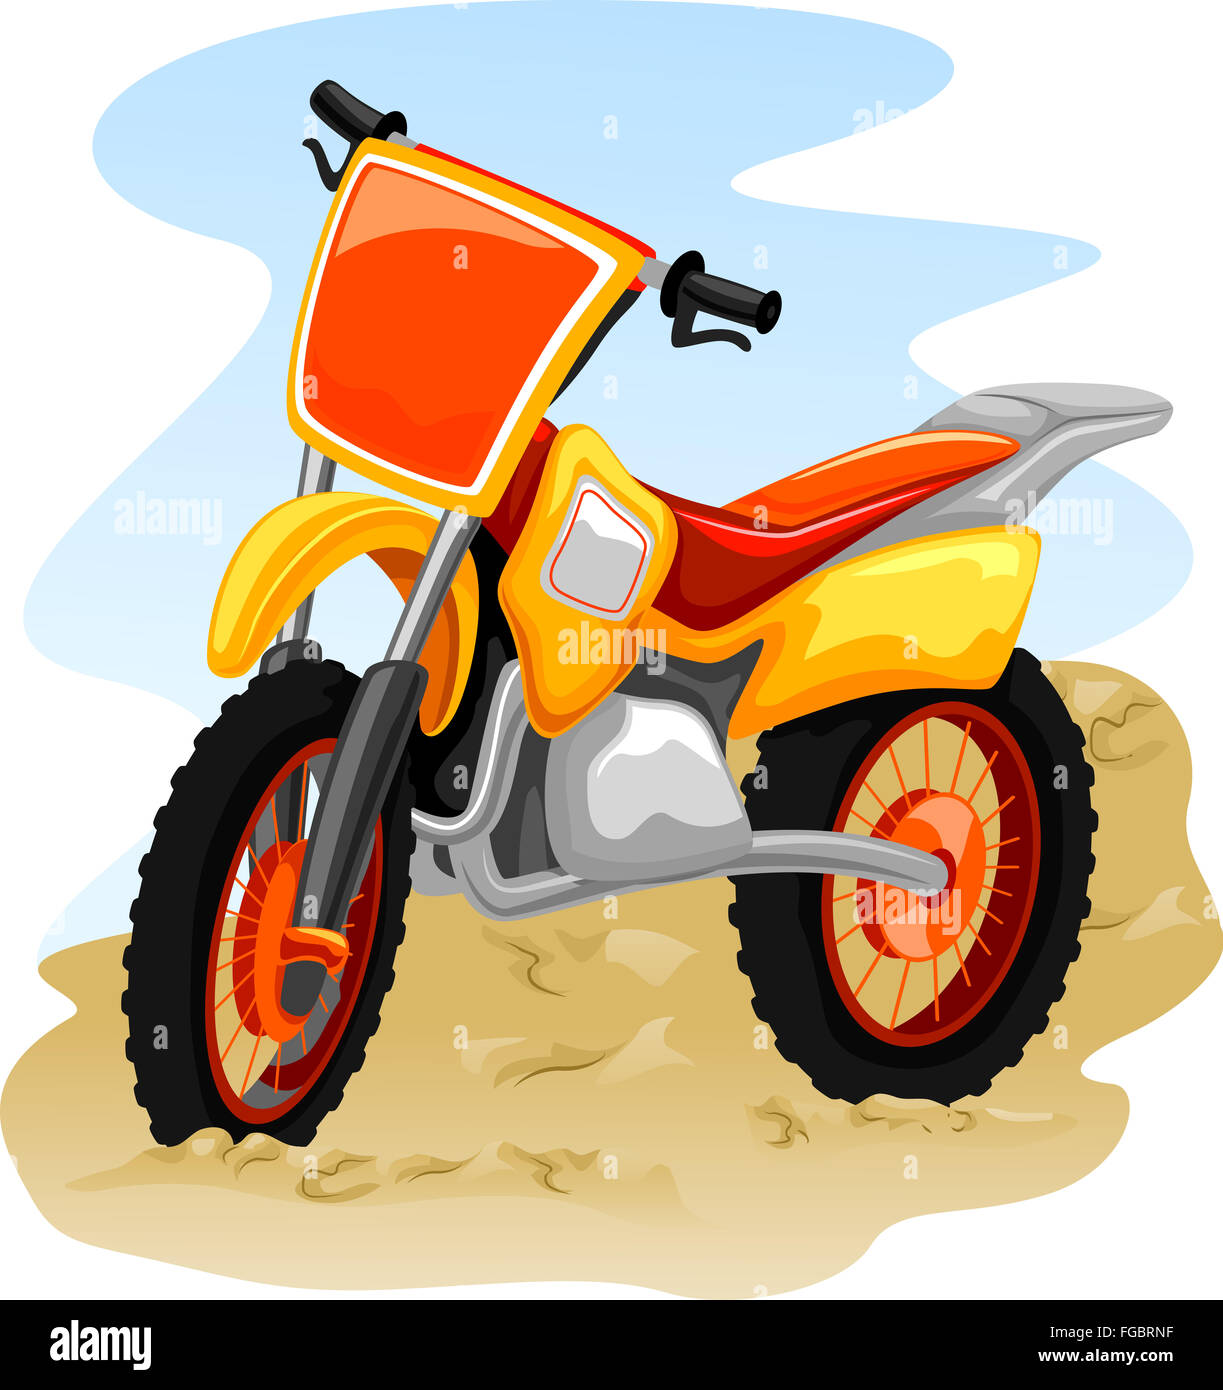 Illustration d'un moto-cross au milieu d'une route poussiéreuse Banque D'Images